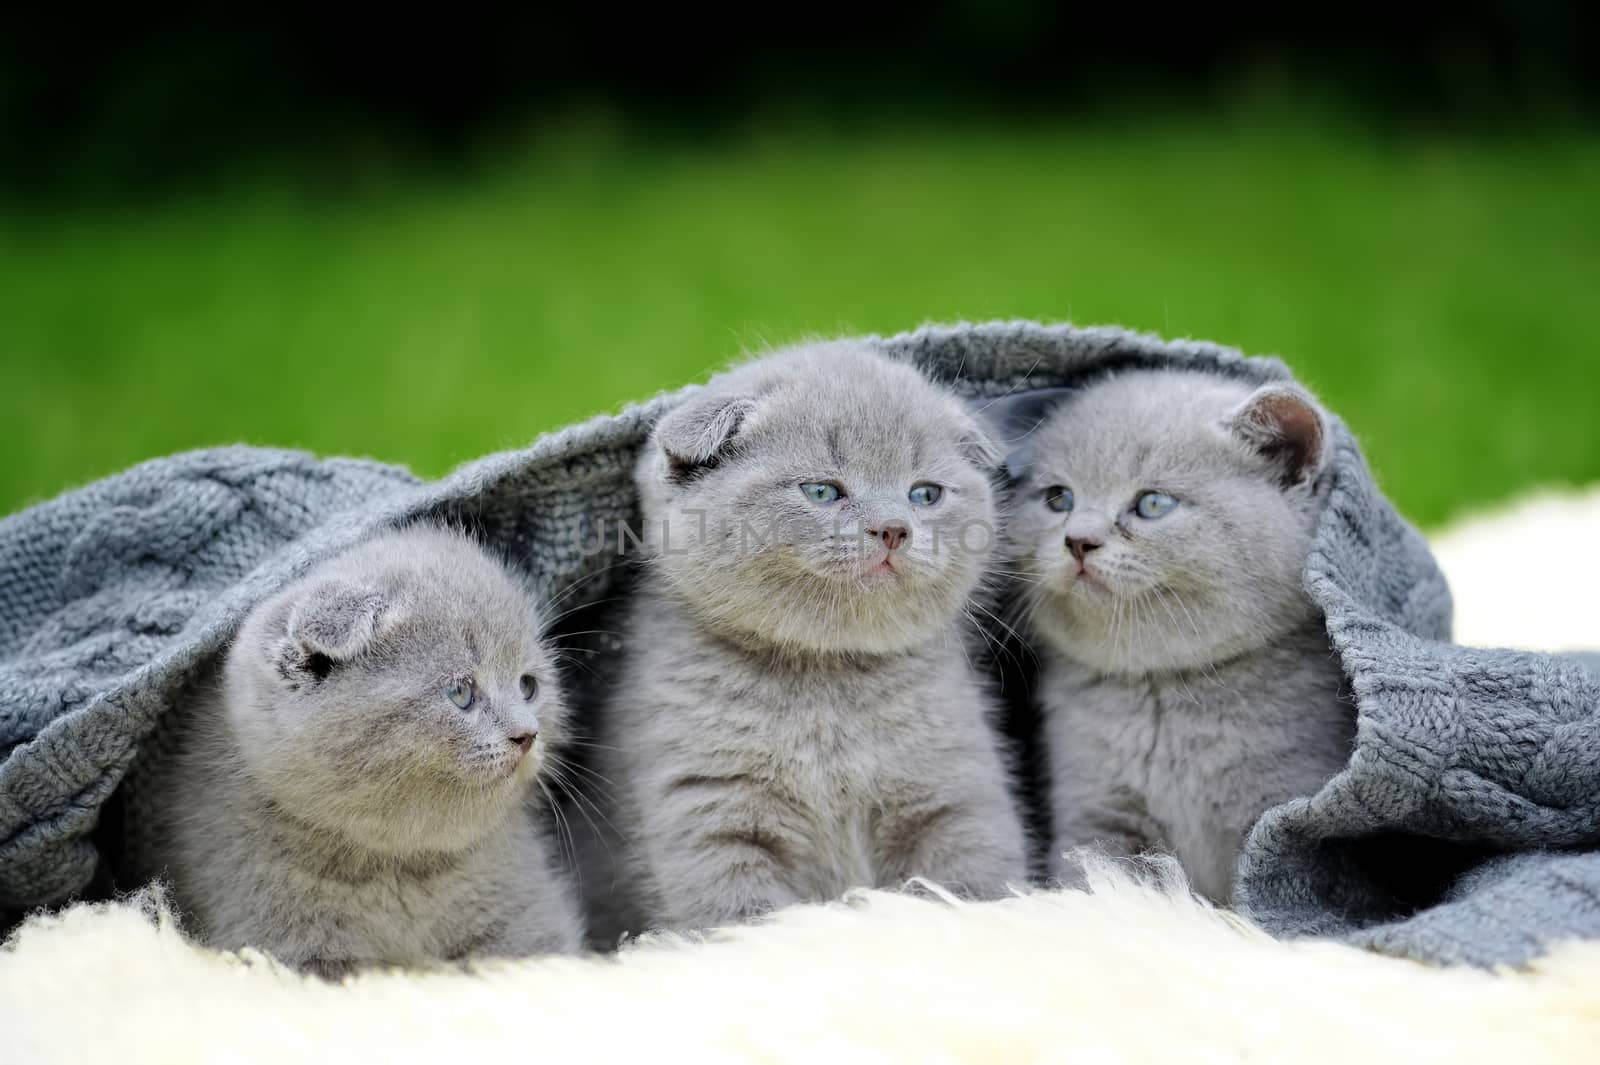 Three cute gray kitten on fur white blanket on nature